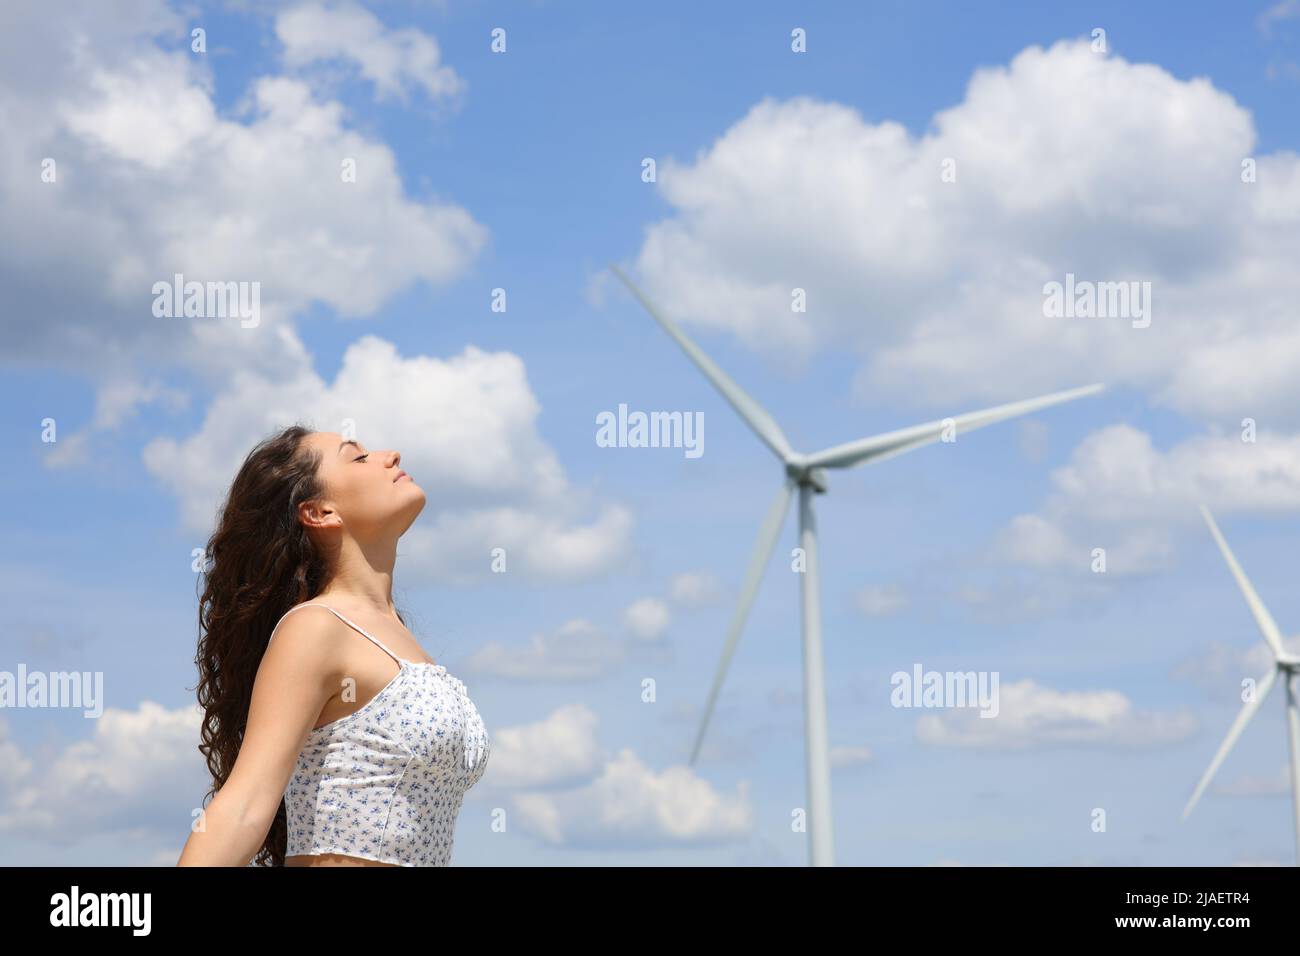 Profil d'une femme qui respirait de l'air frais dans un parc éolien Banque D'Images